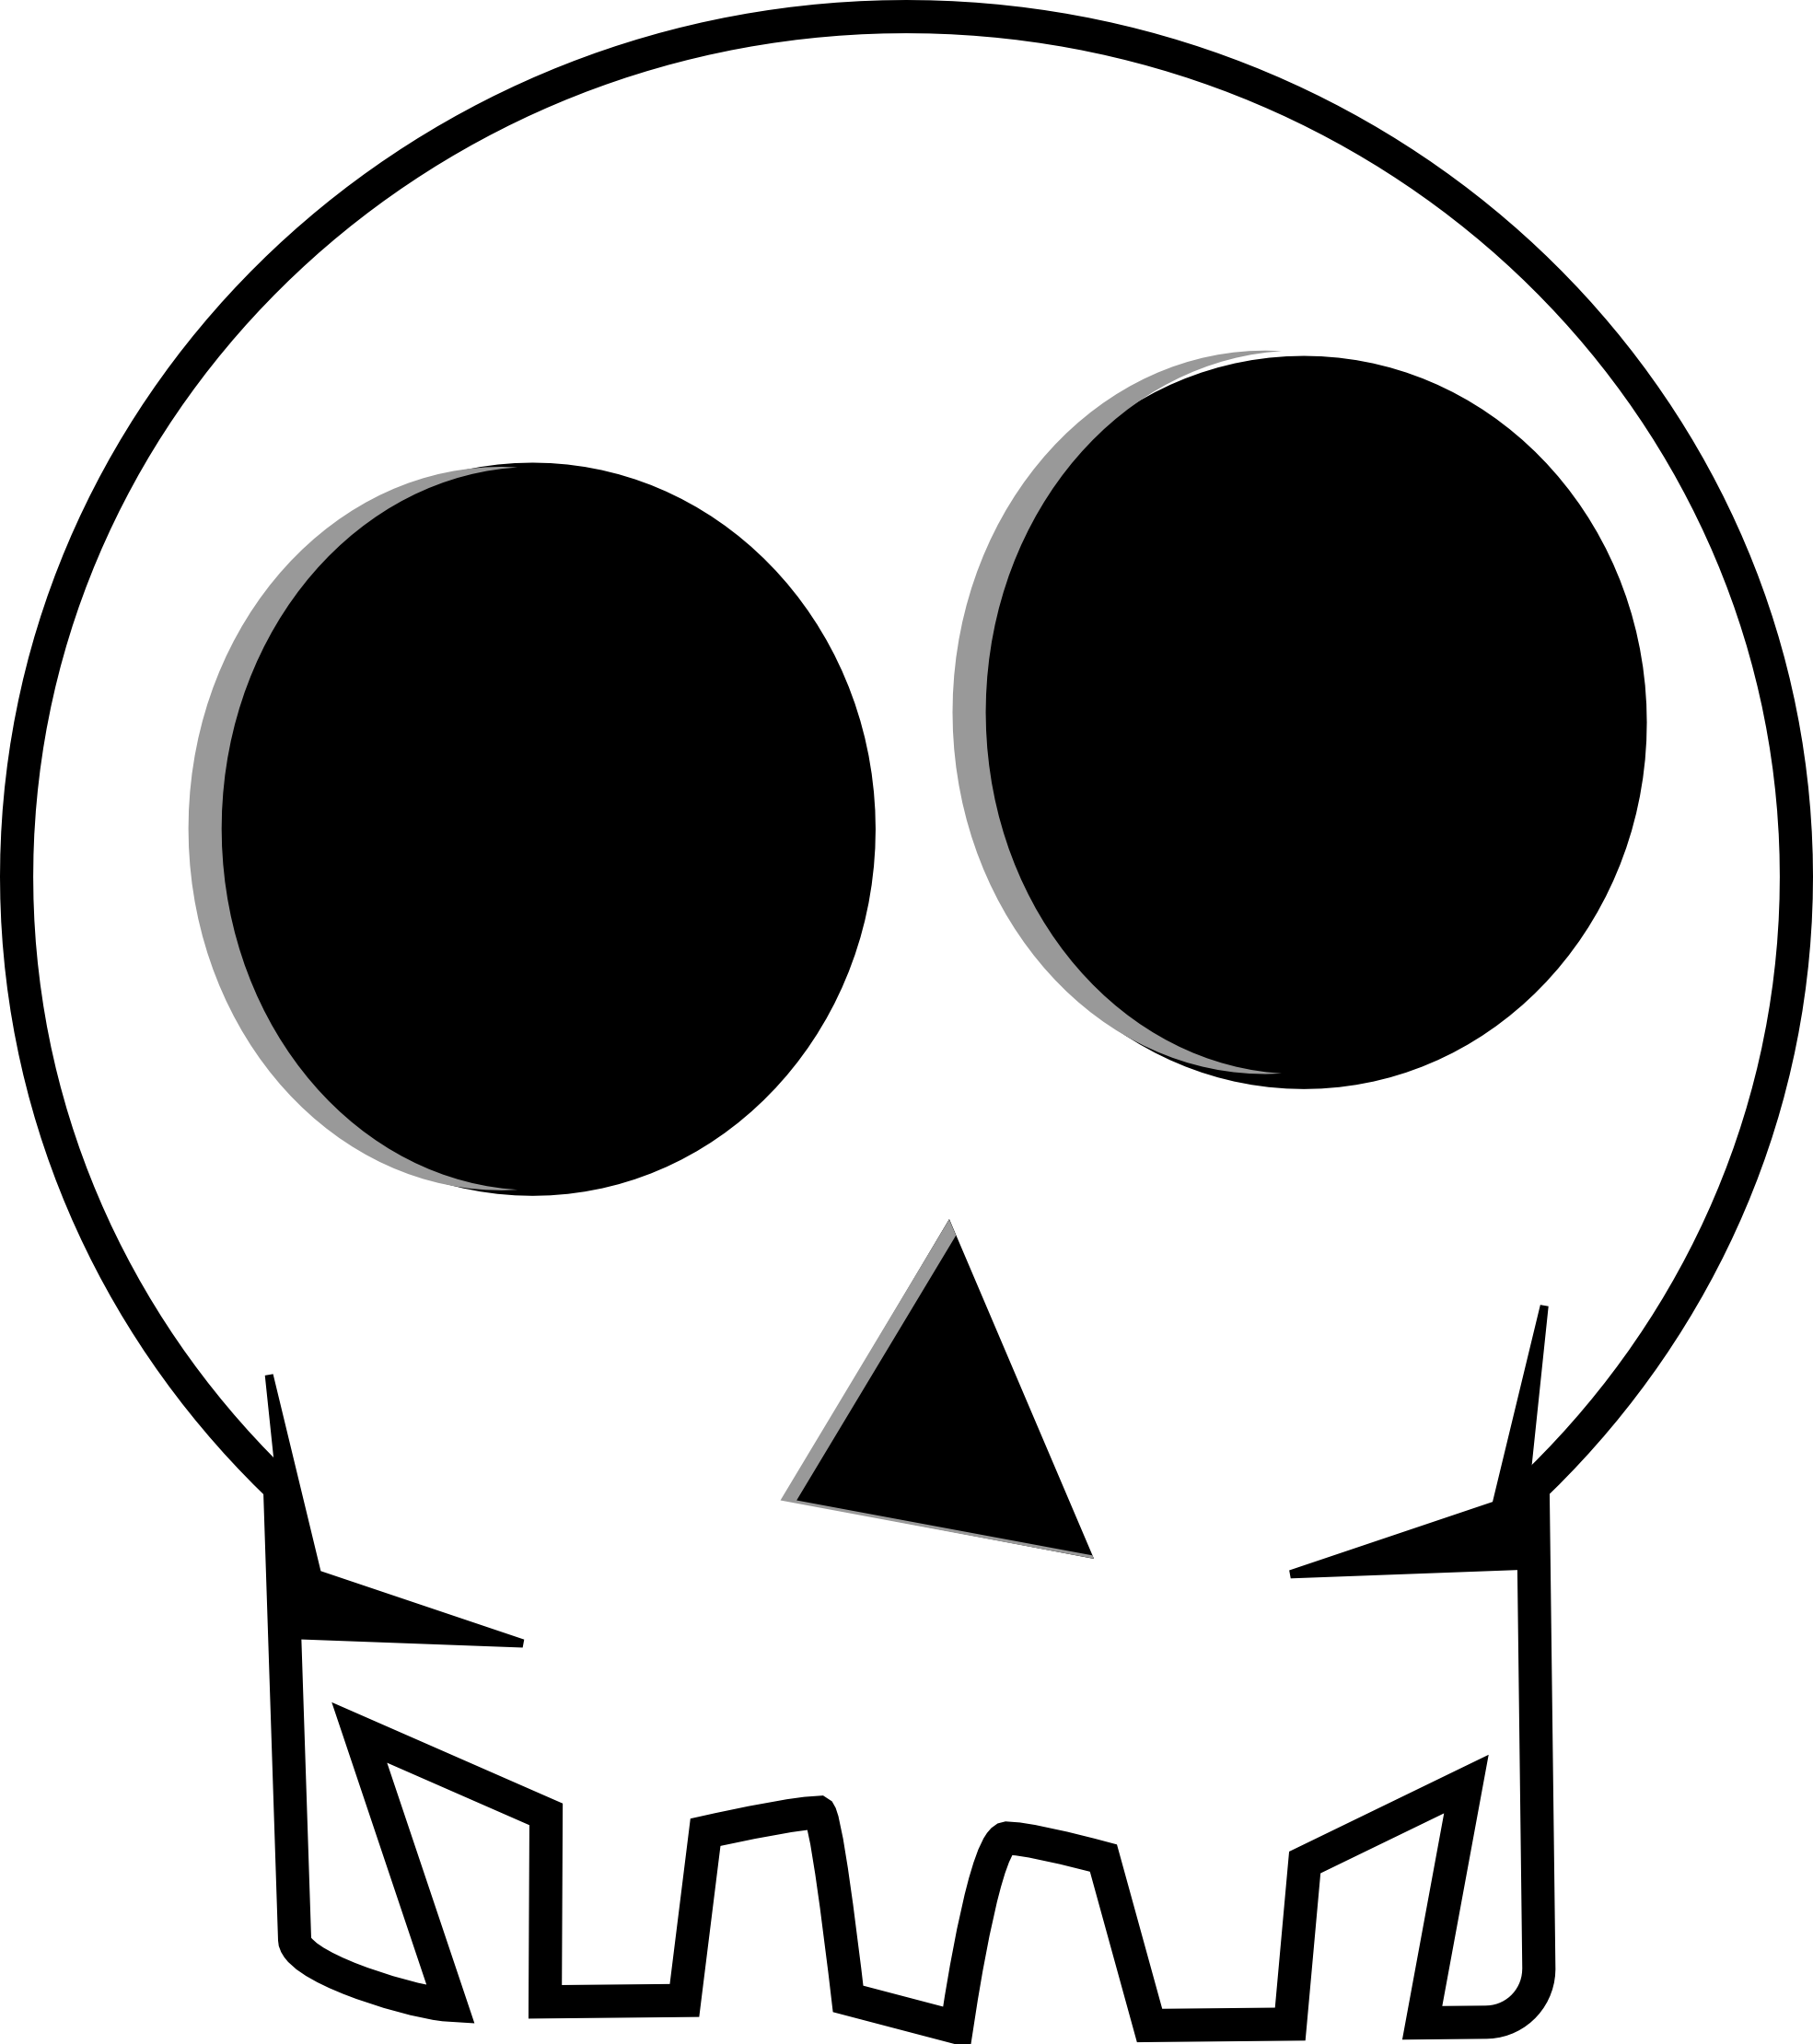 Skull4